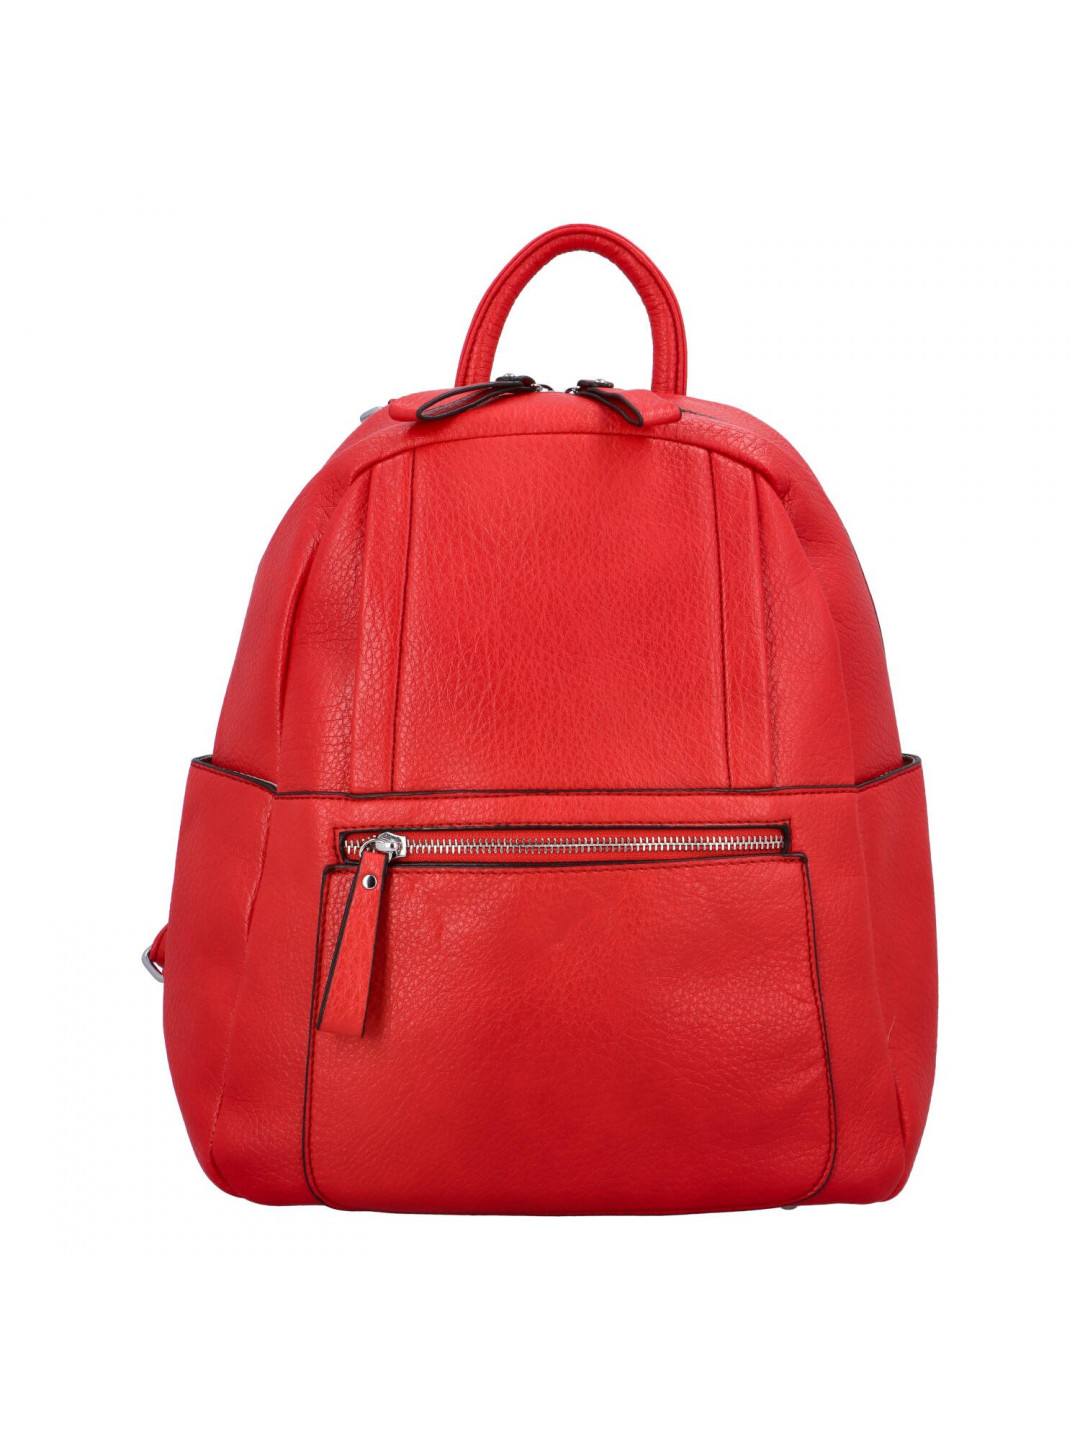 Příjemný dámský koženkový batůžek kabelka Amurath červená